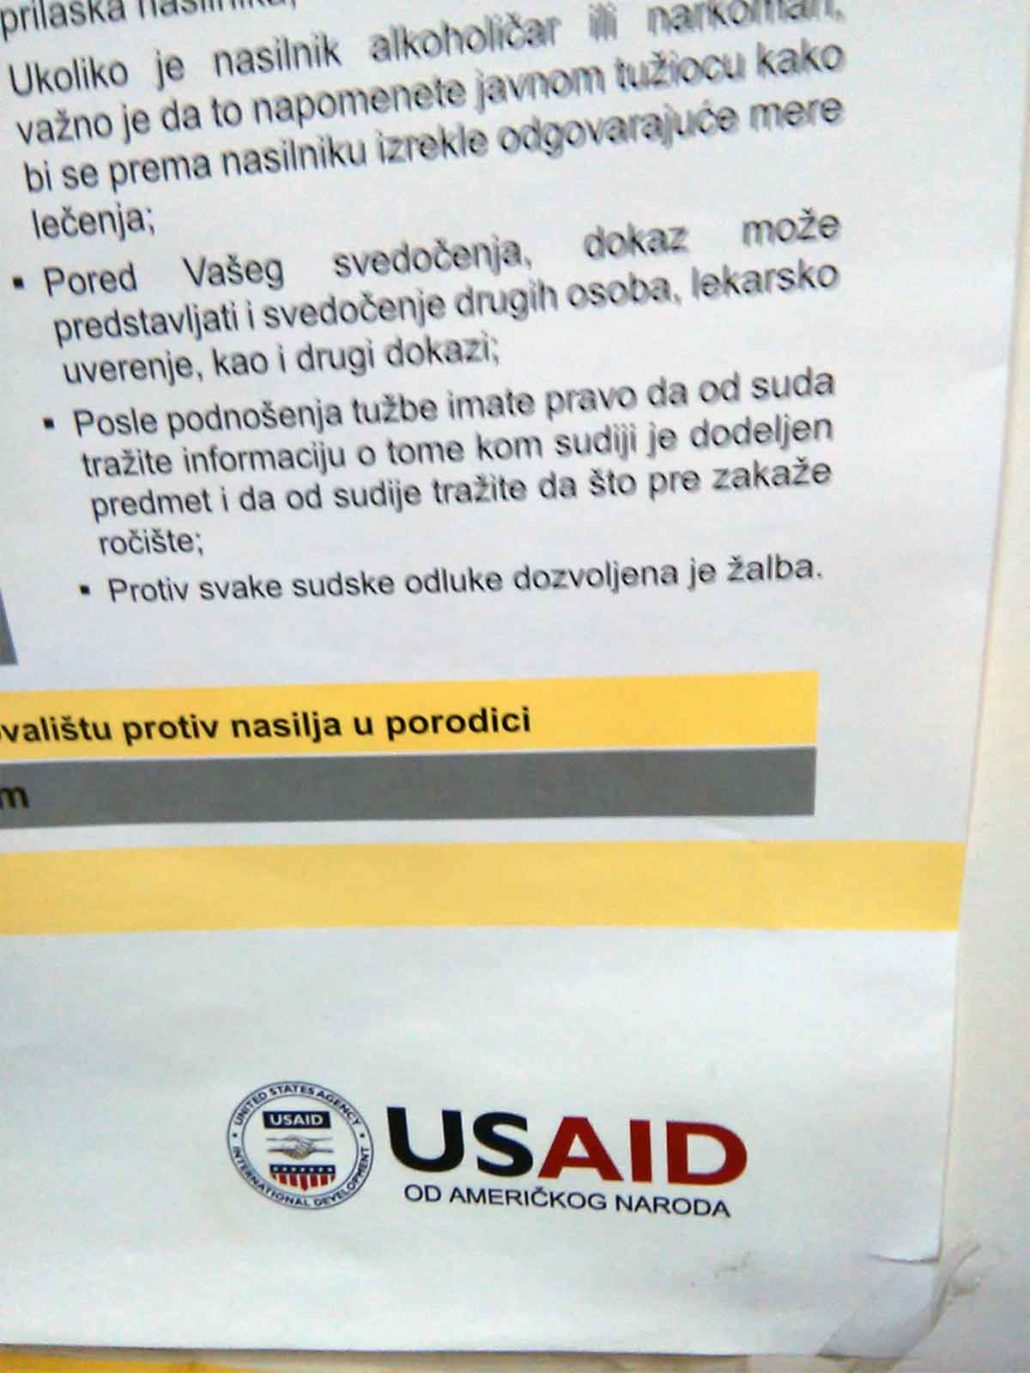 Dok narod gladuje Ana Brnabić se bahati. USAID brine o oduzimanju dece Srbije.